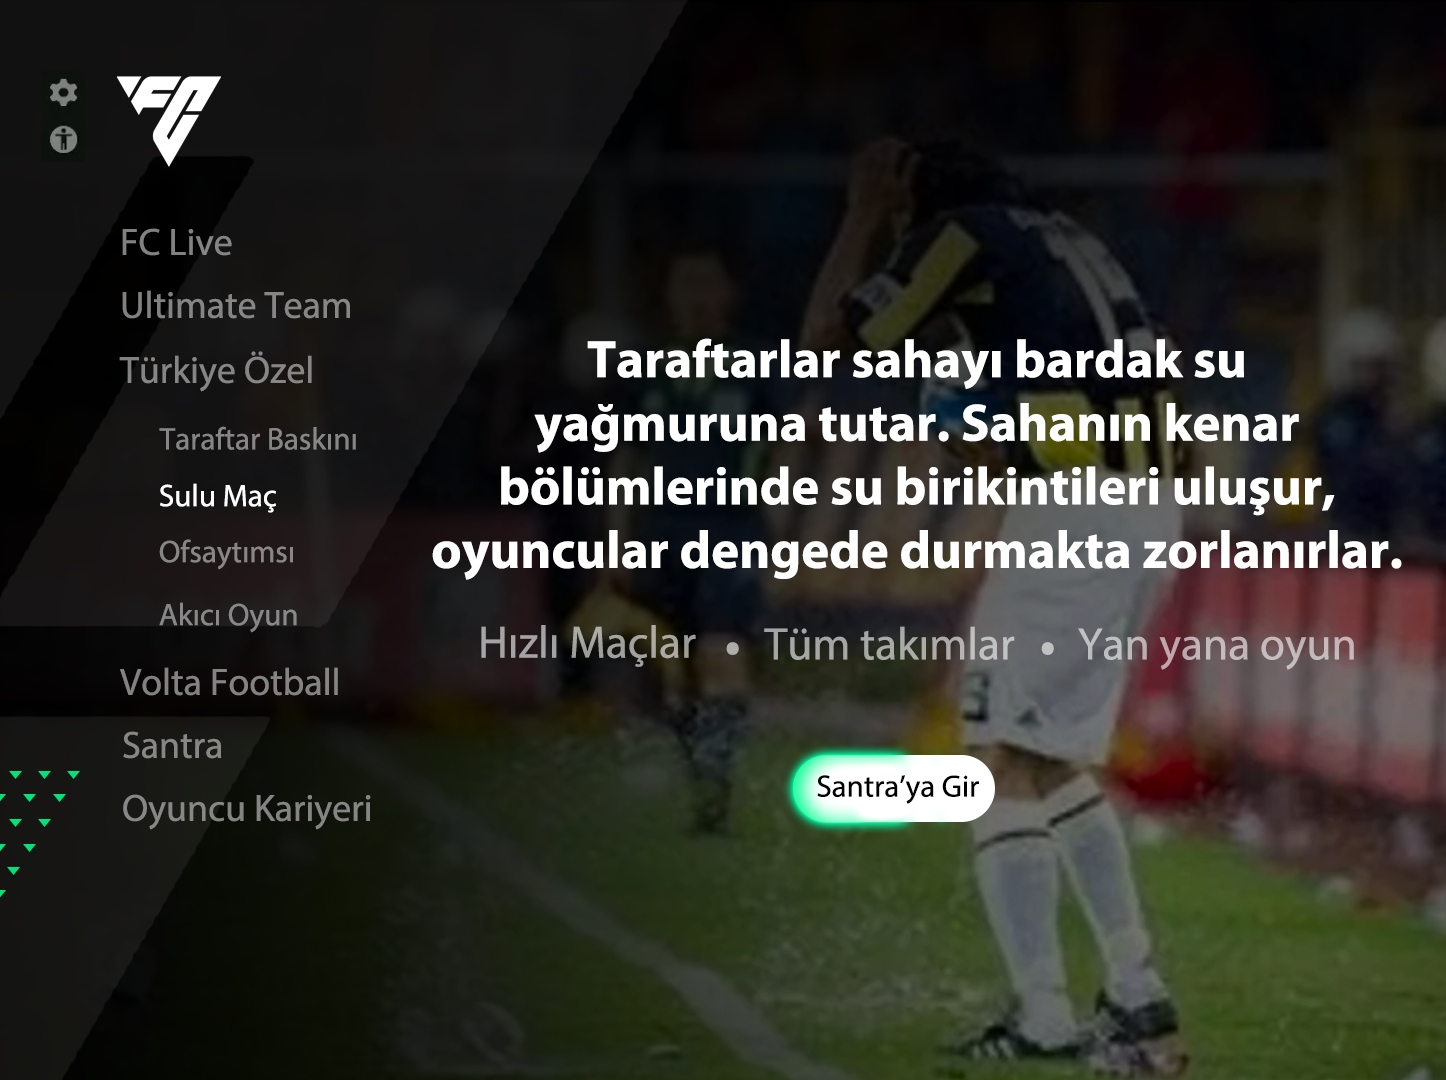 Ulaş Utku Bozdoğan: Böyle Lige Böyle Oyun: FC 24'te Türk Futboluna Özel Modlar ve Taktikler Olsa Nasıl Olurdu? 31